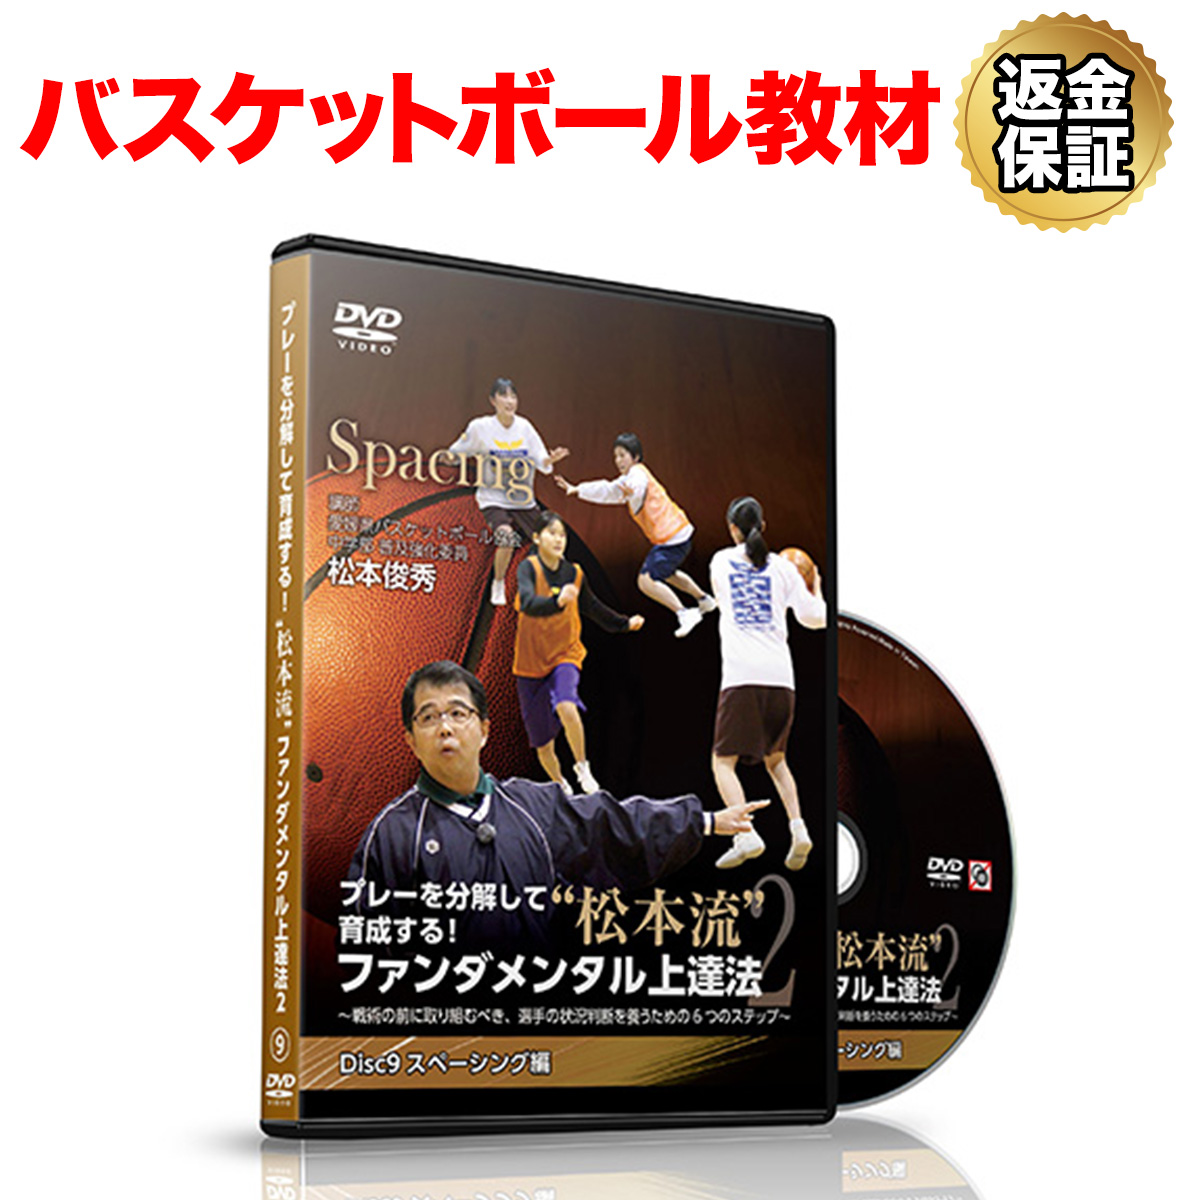 バスケットボール 教材 DVD プレーを分解して指導する ストア 松本流ファンダメンタル練習法2 Disc9 全国一律送料無料 選手の状況判断を養うための6つのステップ～ スペーシング編 ～戦術の前に取り組むべき